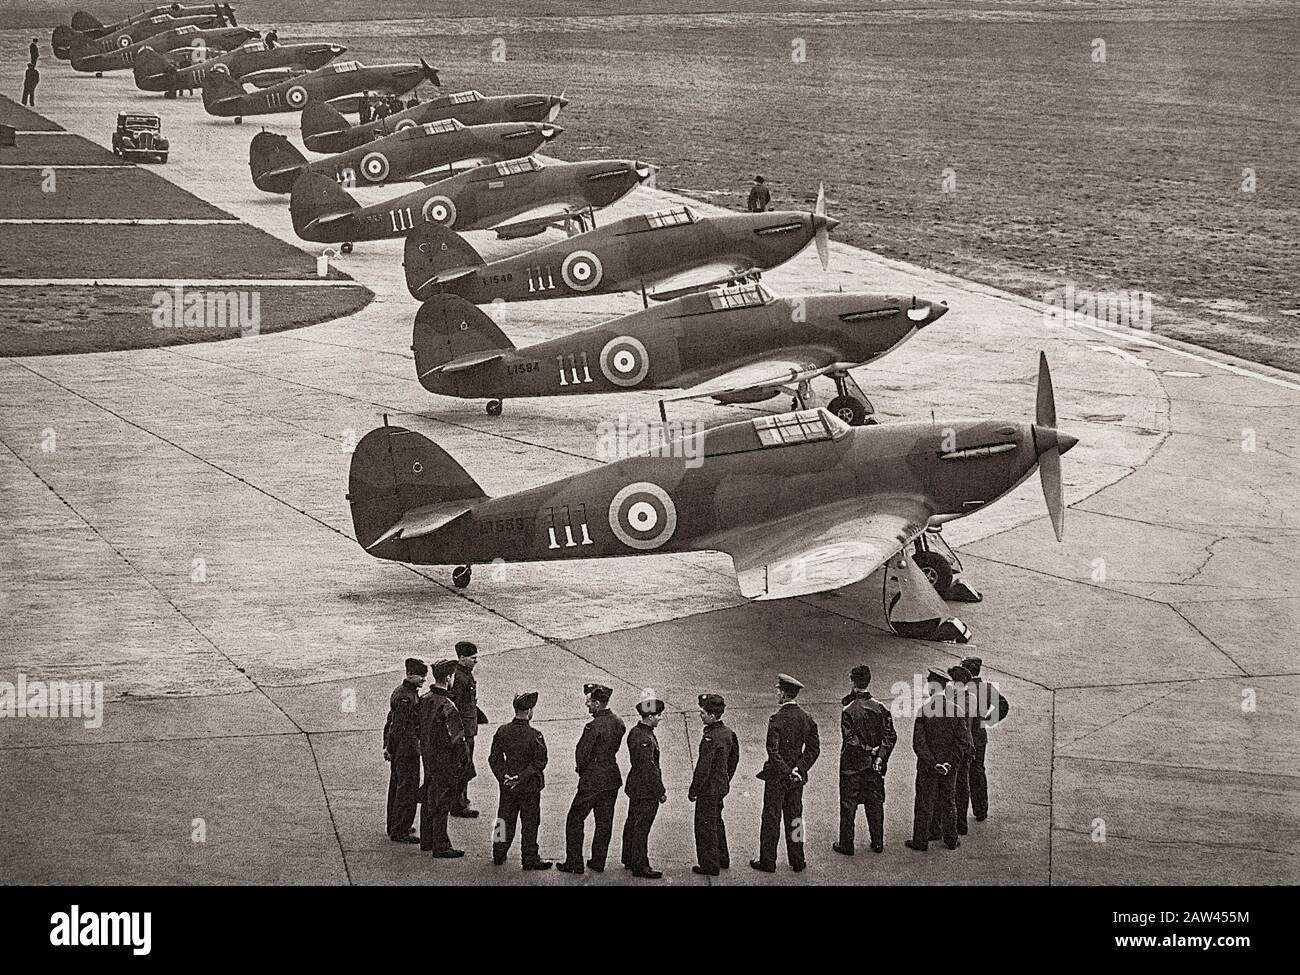 Un volo del nuovo Hawker Hurricane i, l'aereo da combattimento a posto singolo progettato da Sir Sydney Camm che entra in servizio con 111 Squadron al RAF Northolt. La versione monoplanare del biplano Hawker Fury della 1930s precedente ha incorporato un dispositivo di atterraggio retrattile e il più potente motore Rolls-Royce Merlin. Fu oscurato dallo Spitfire durante la Battaglia di Gran Bretagna nel 1940, ma l'uragano inflisse circa il 70% delle perdite sostenute dalla Luftwaffe nell'impegno, e combatté in tutti i maggiori teatri della Seconda guerra mondiale. Foto Stock